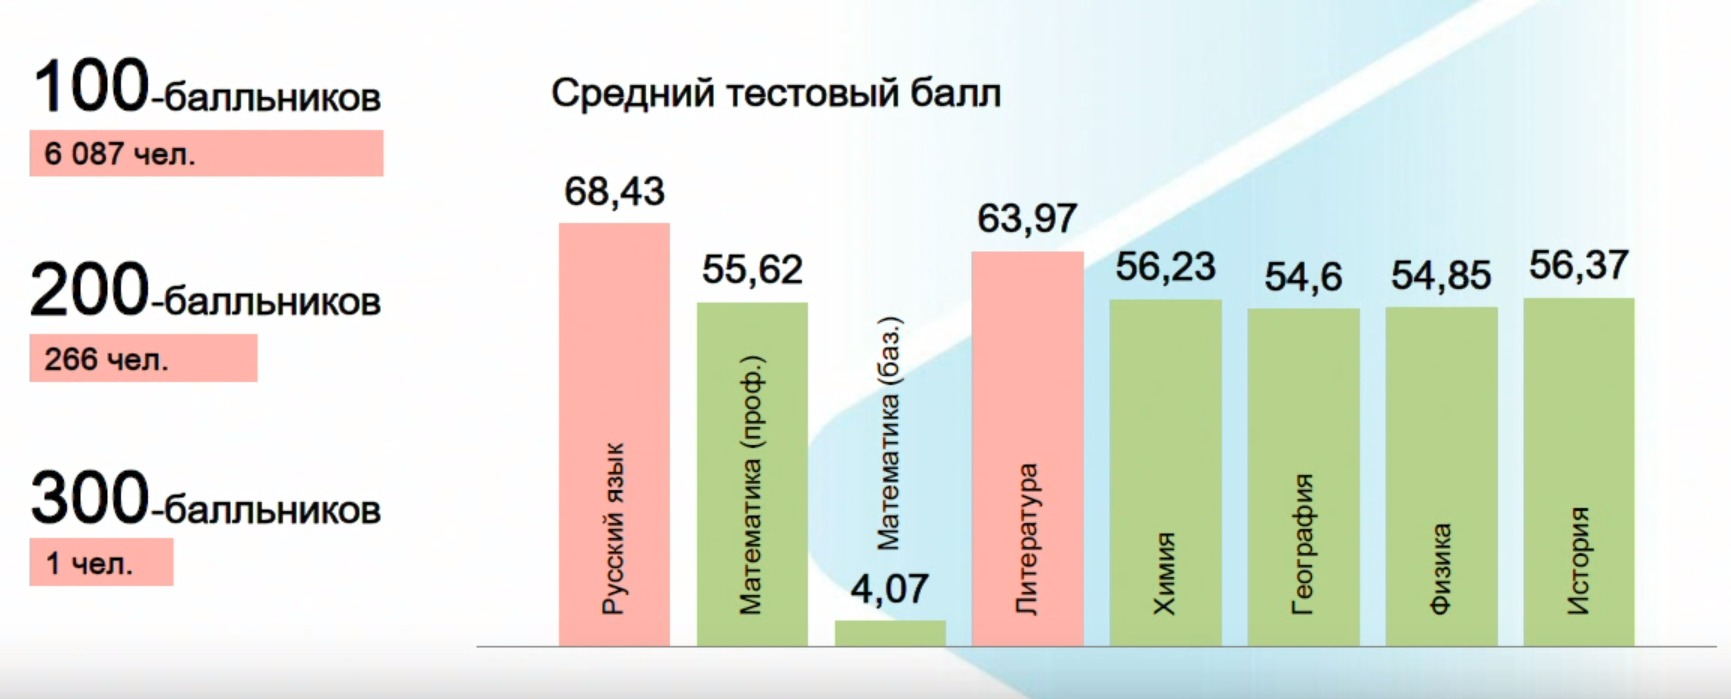 Большинство людей в наше время считают огэ. Баллы ЕГЭ. Средний балл ЕГЭ по России. Результаты ЕГЭ. Средний балл ЕГЭ по годам.